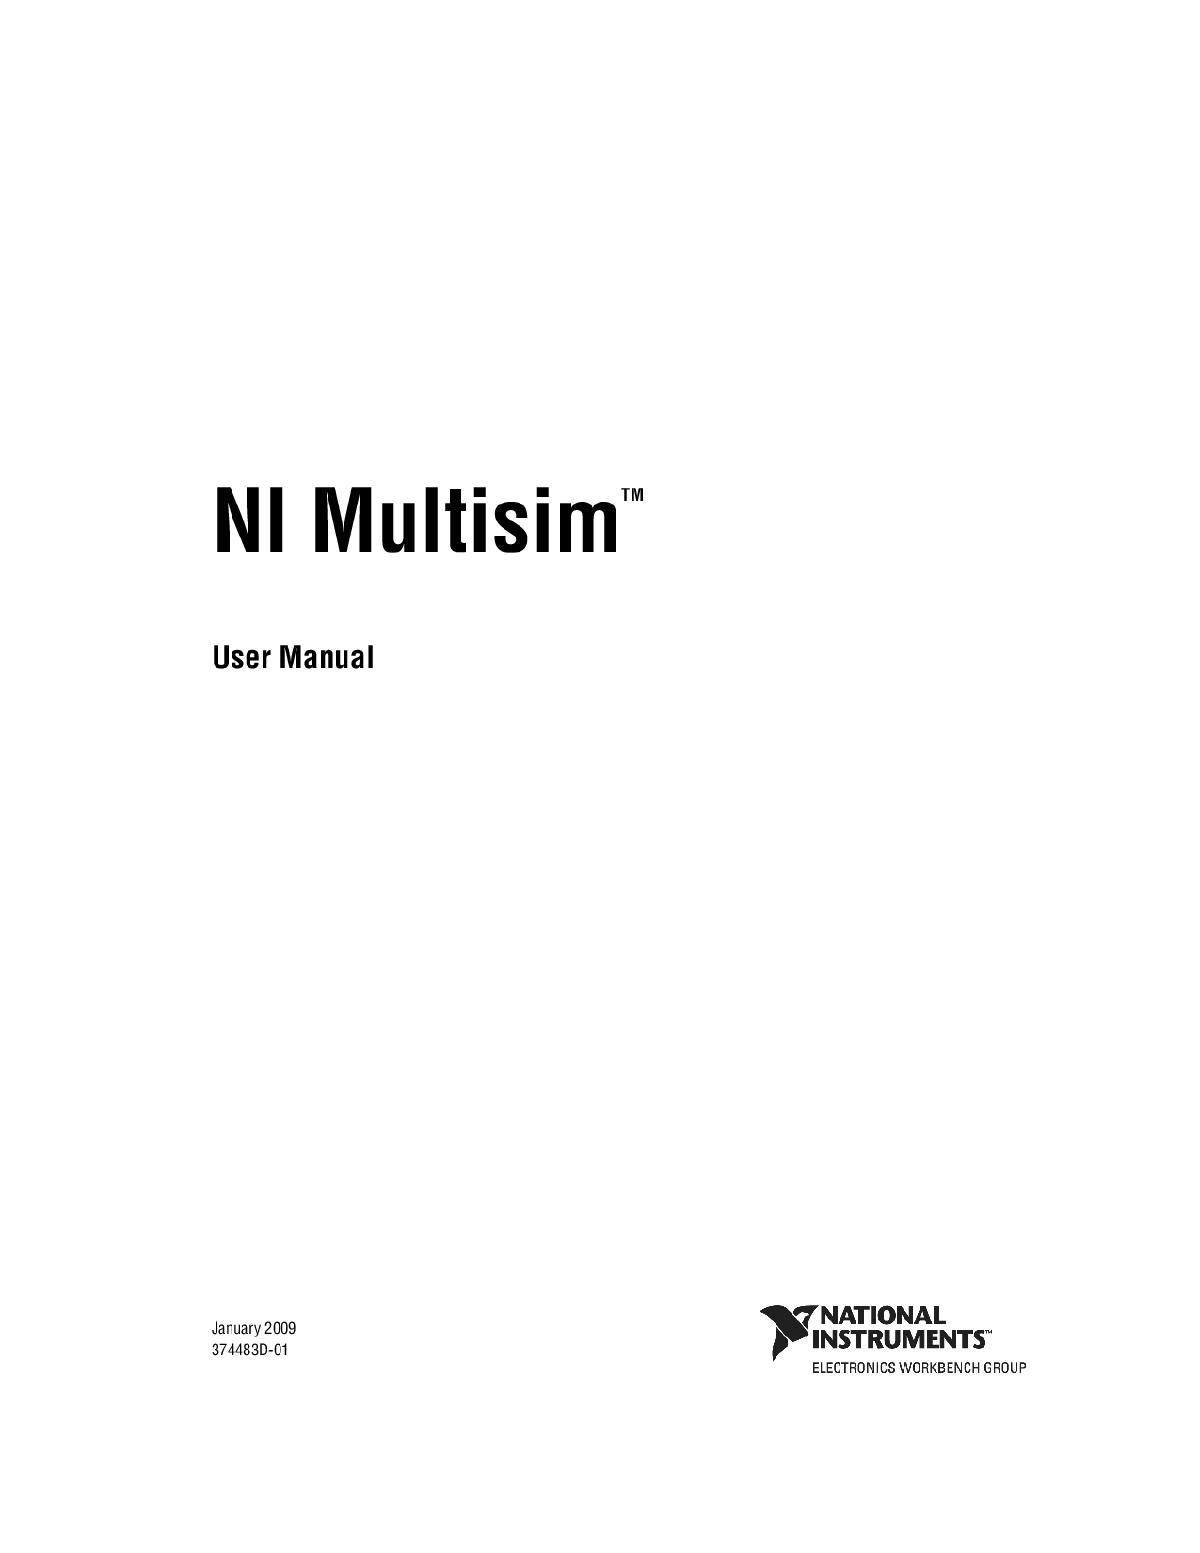 Multisim Instruction Manual